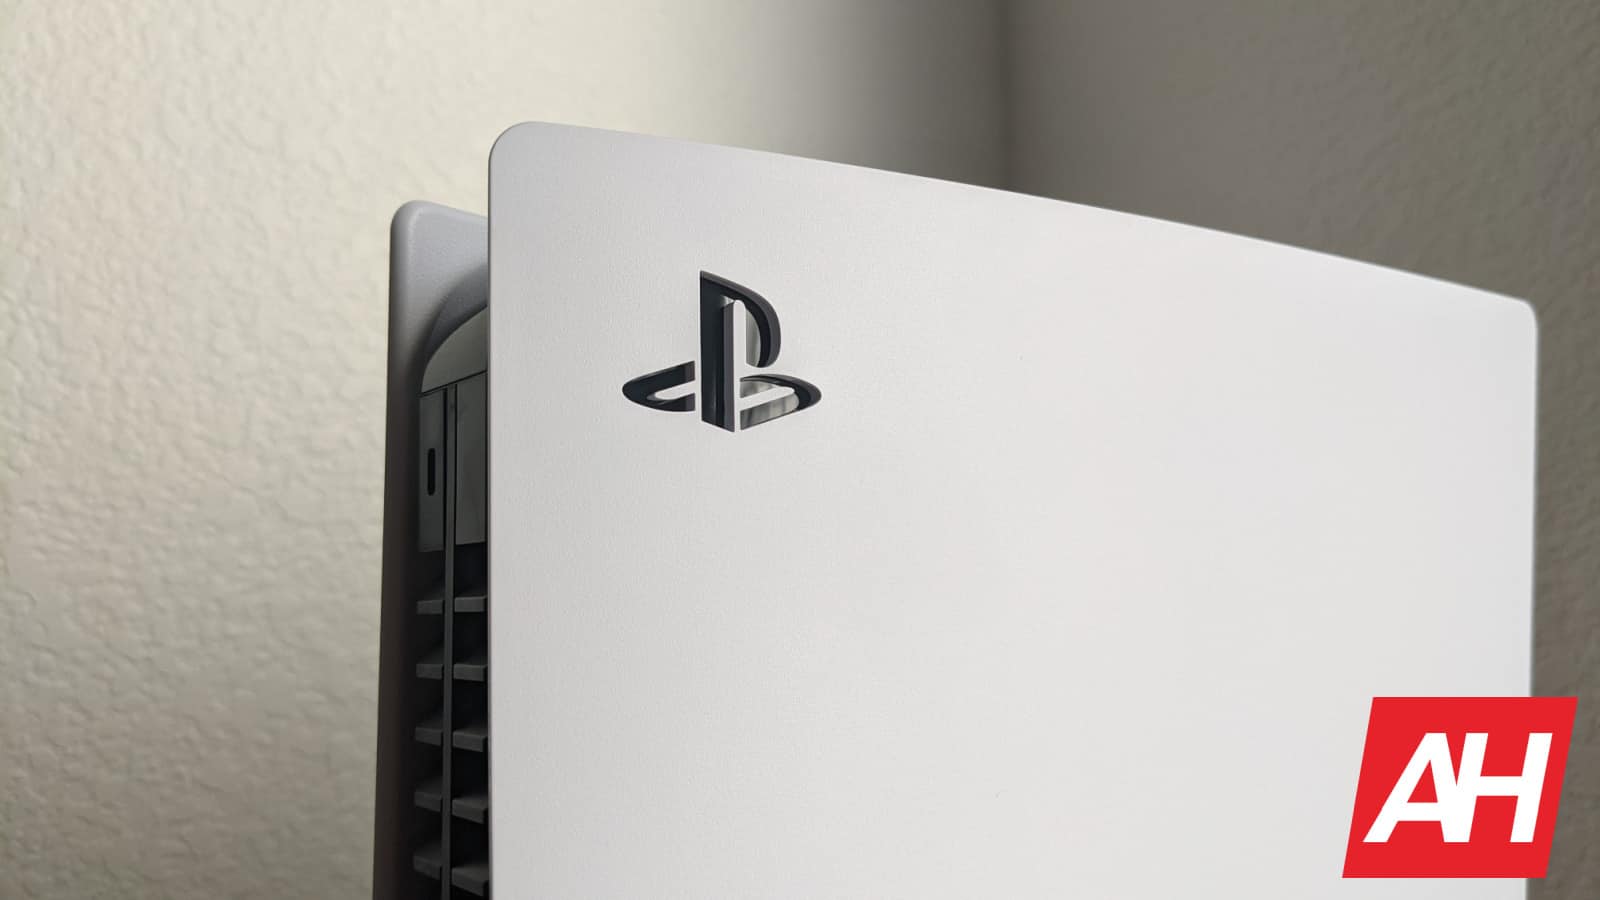 La PS5 Pro de Sony tendrá un trazado de rayos 3 veces más rápido que la PS5